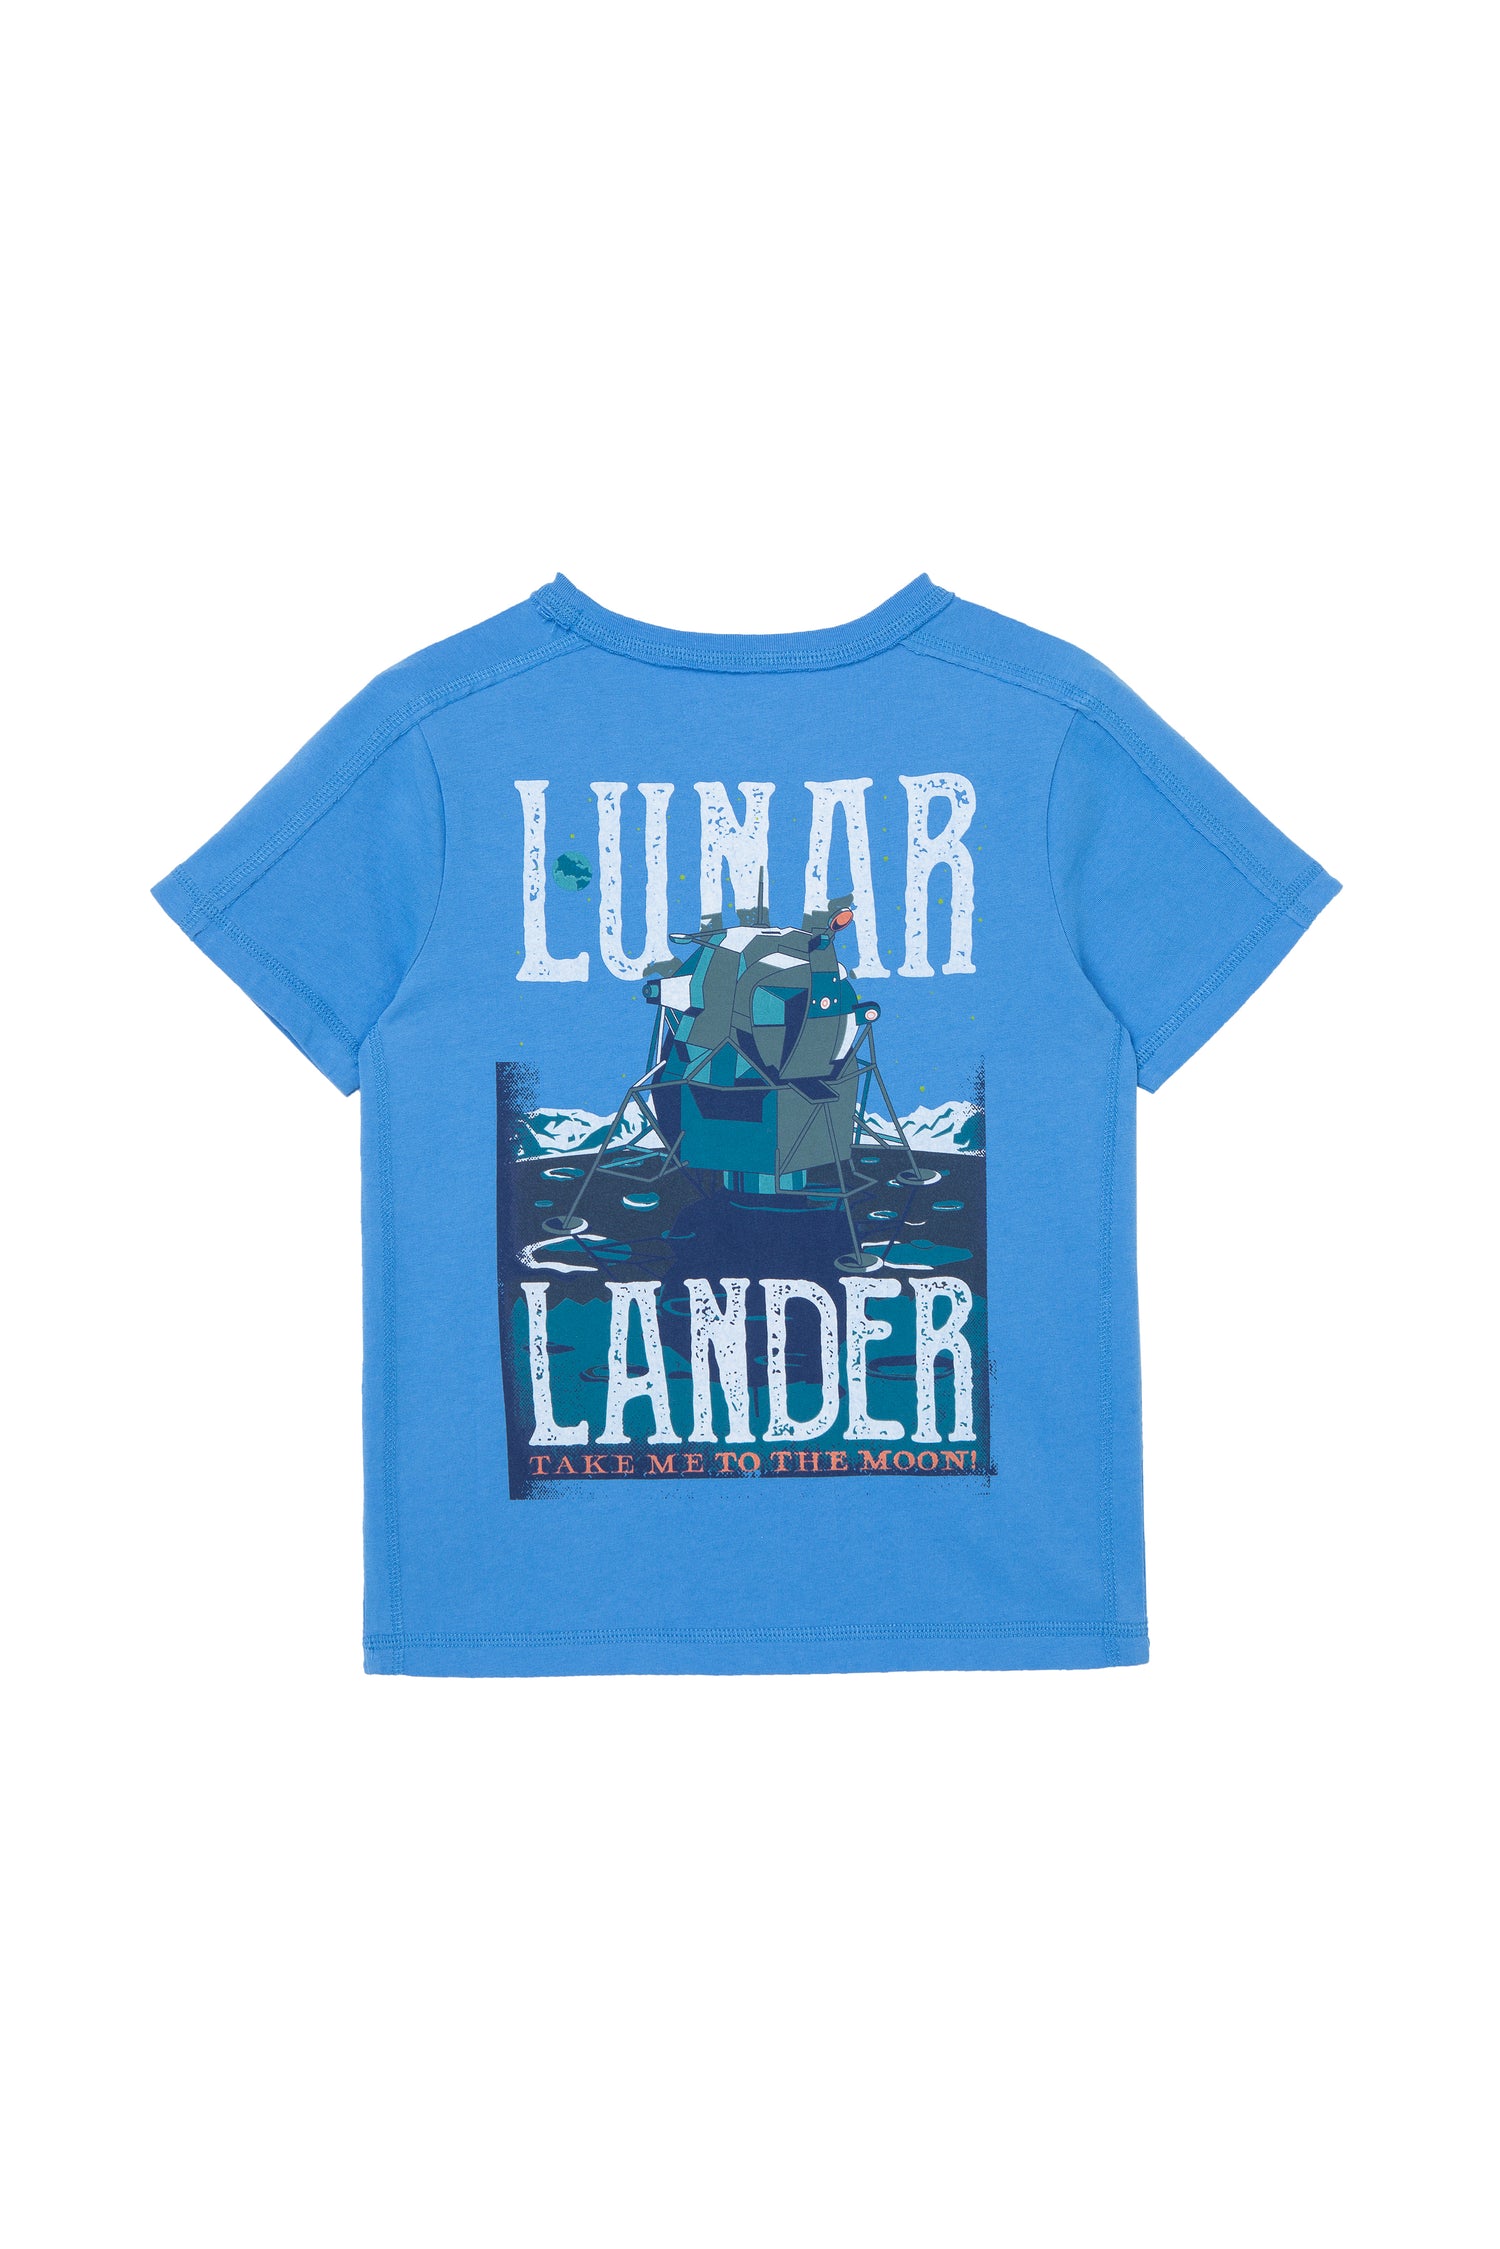 BACK OF BLUE T-SHIRT WITH "LUNAR LANDER"